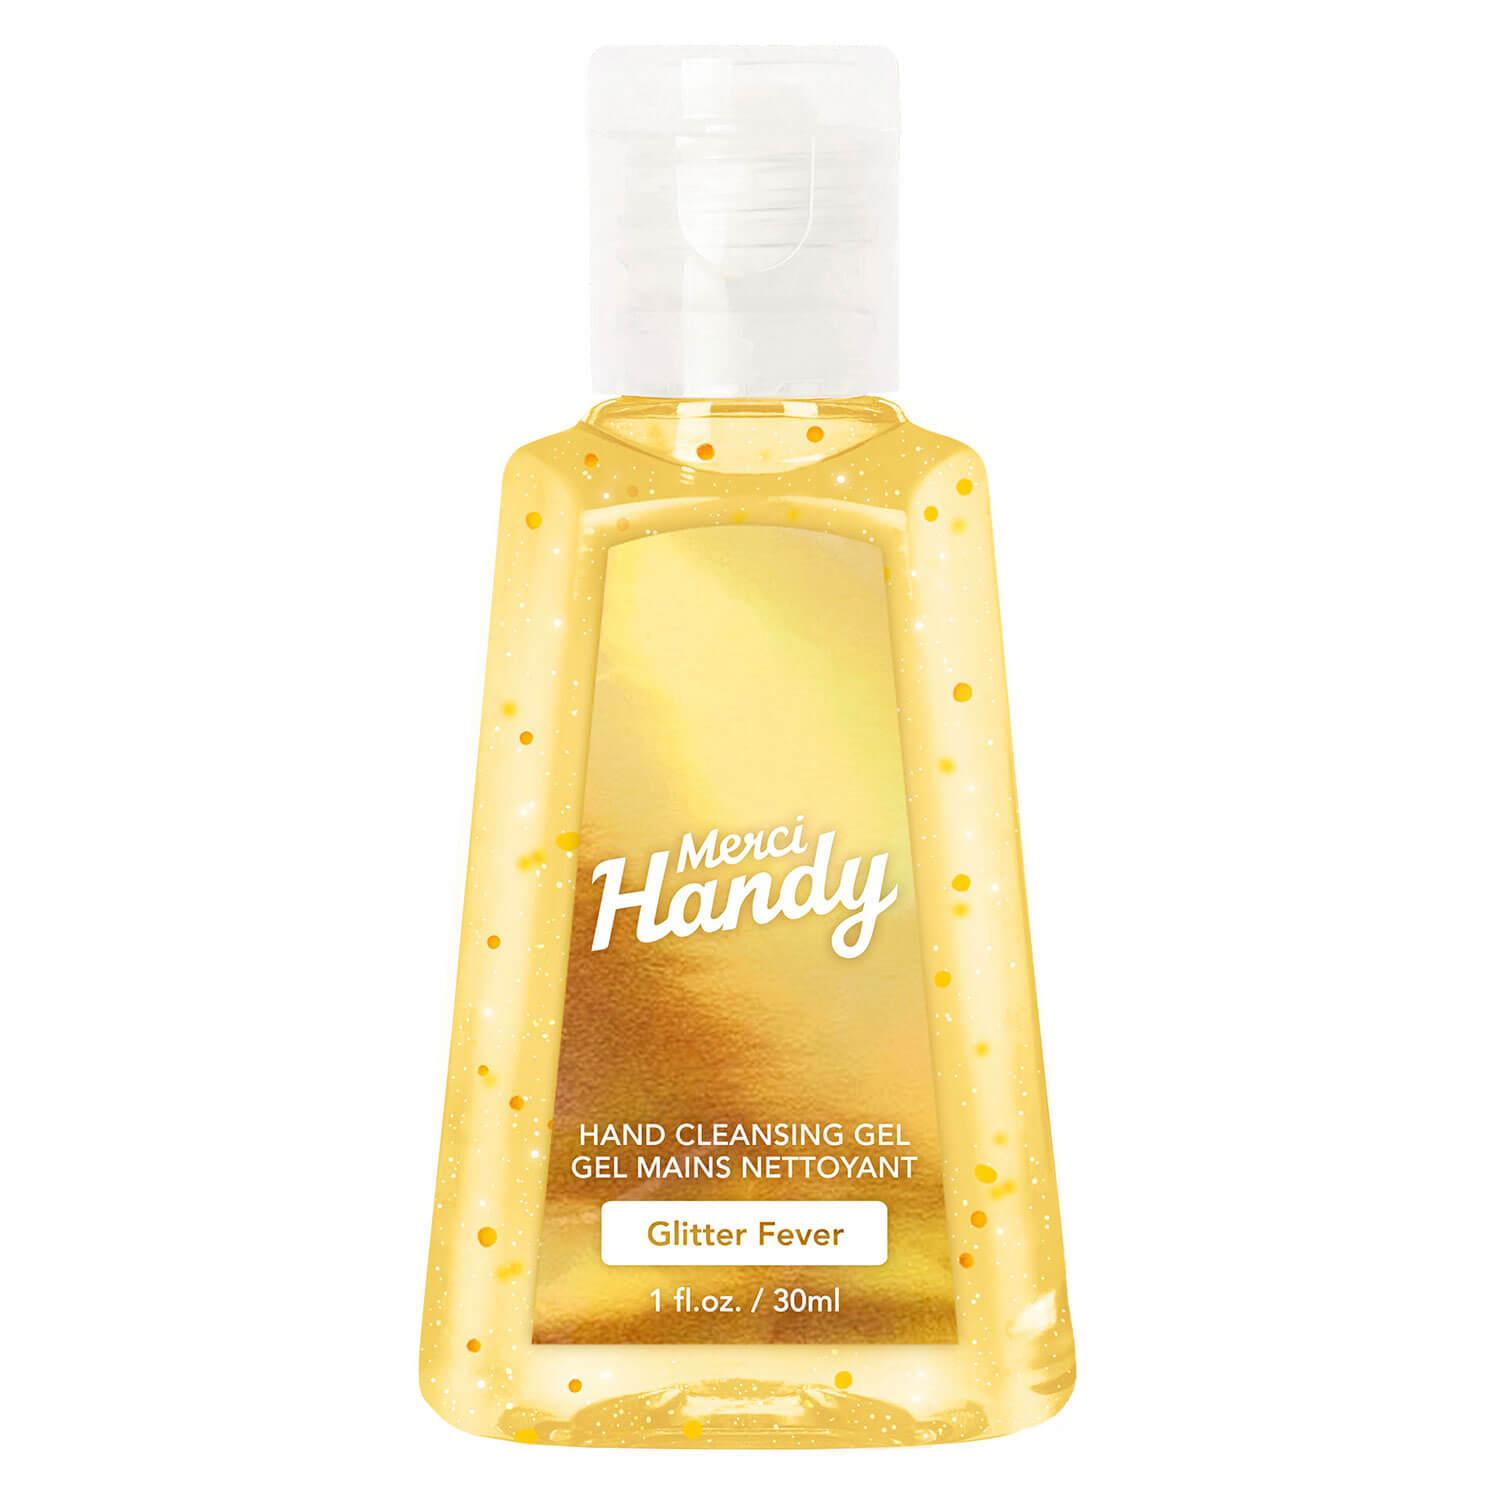 Merci Handy - Hand Cleansing Gel Glitter Fever